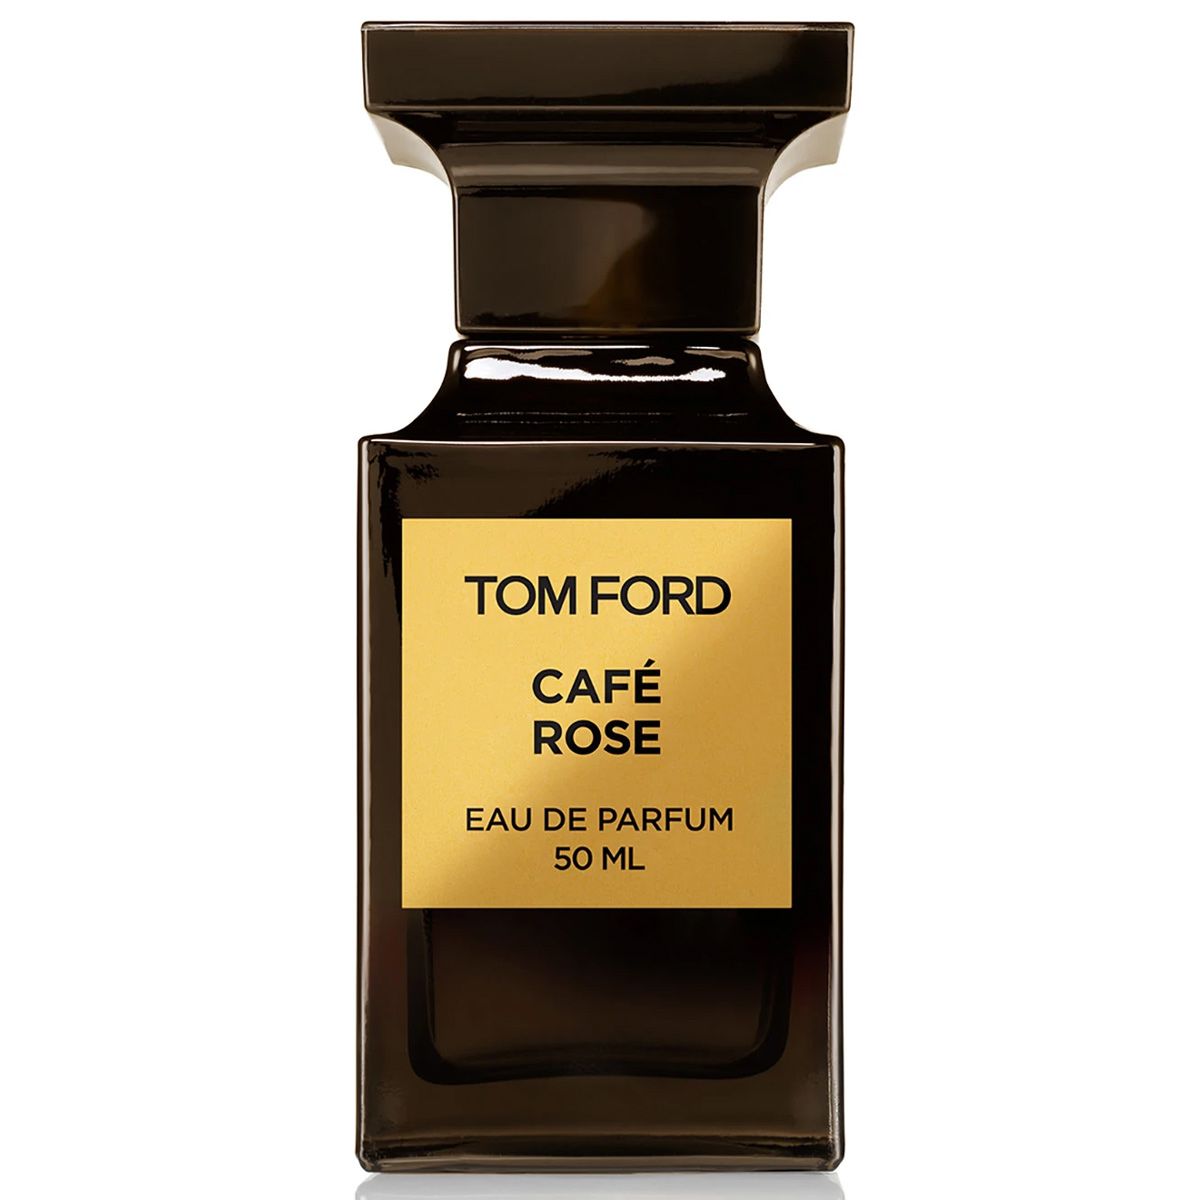  Tom Ford Cafe Rose 